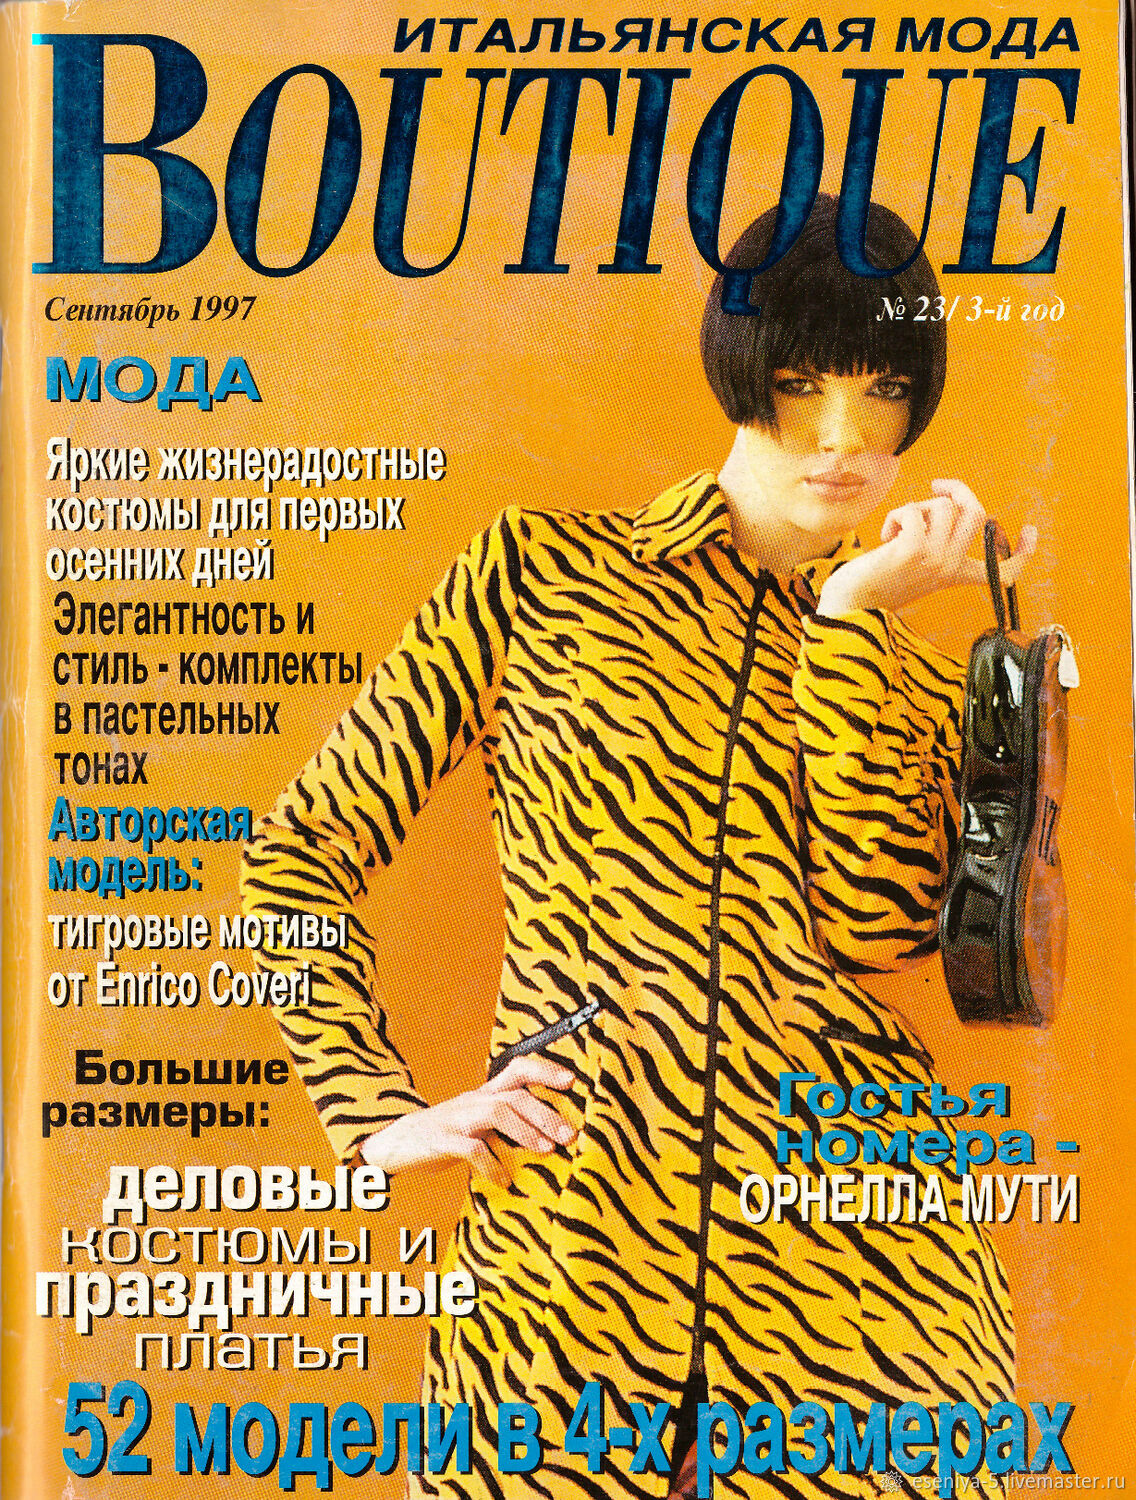 Итальянский журнал boutique. Boutique журнал 1997. Журнал итальянской моды Boutique. Boutique. Итальянская мода (журнал) ray ban. Джинсы Urban Capital Boutique. Итальянская мода (журнал).